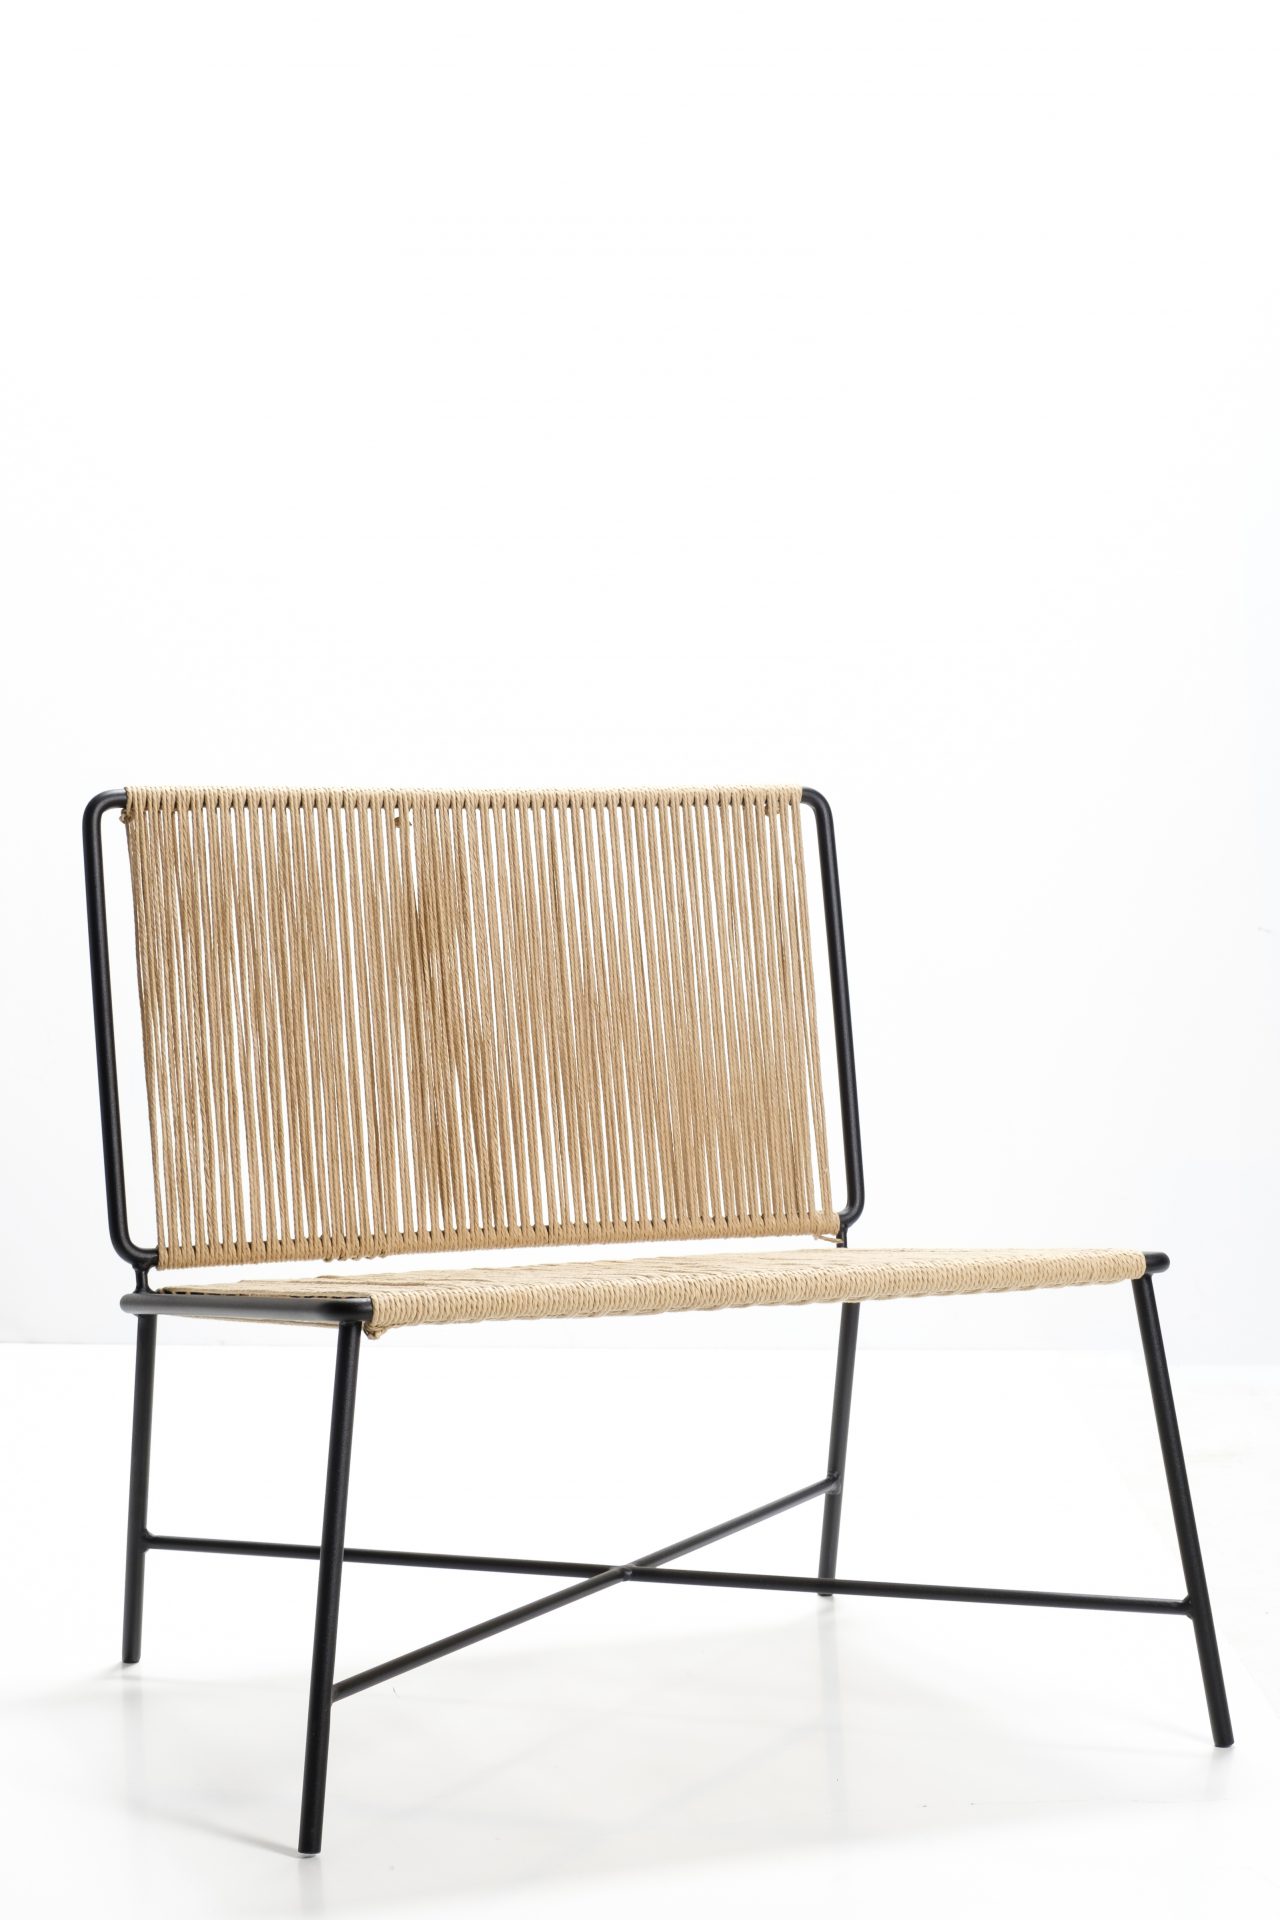 BY 2 chair by Anna Thorunn